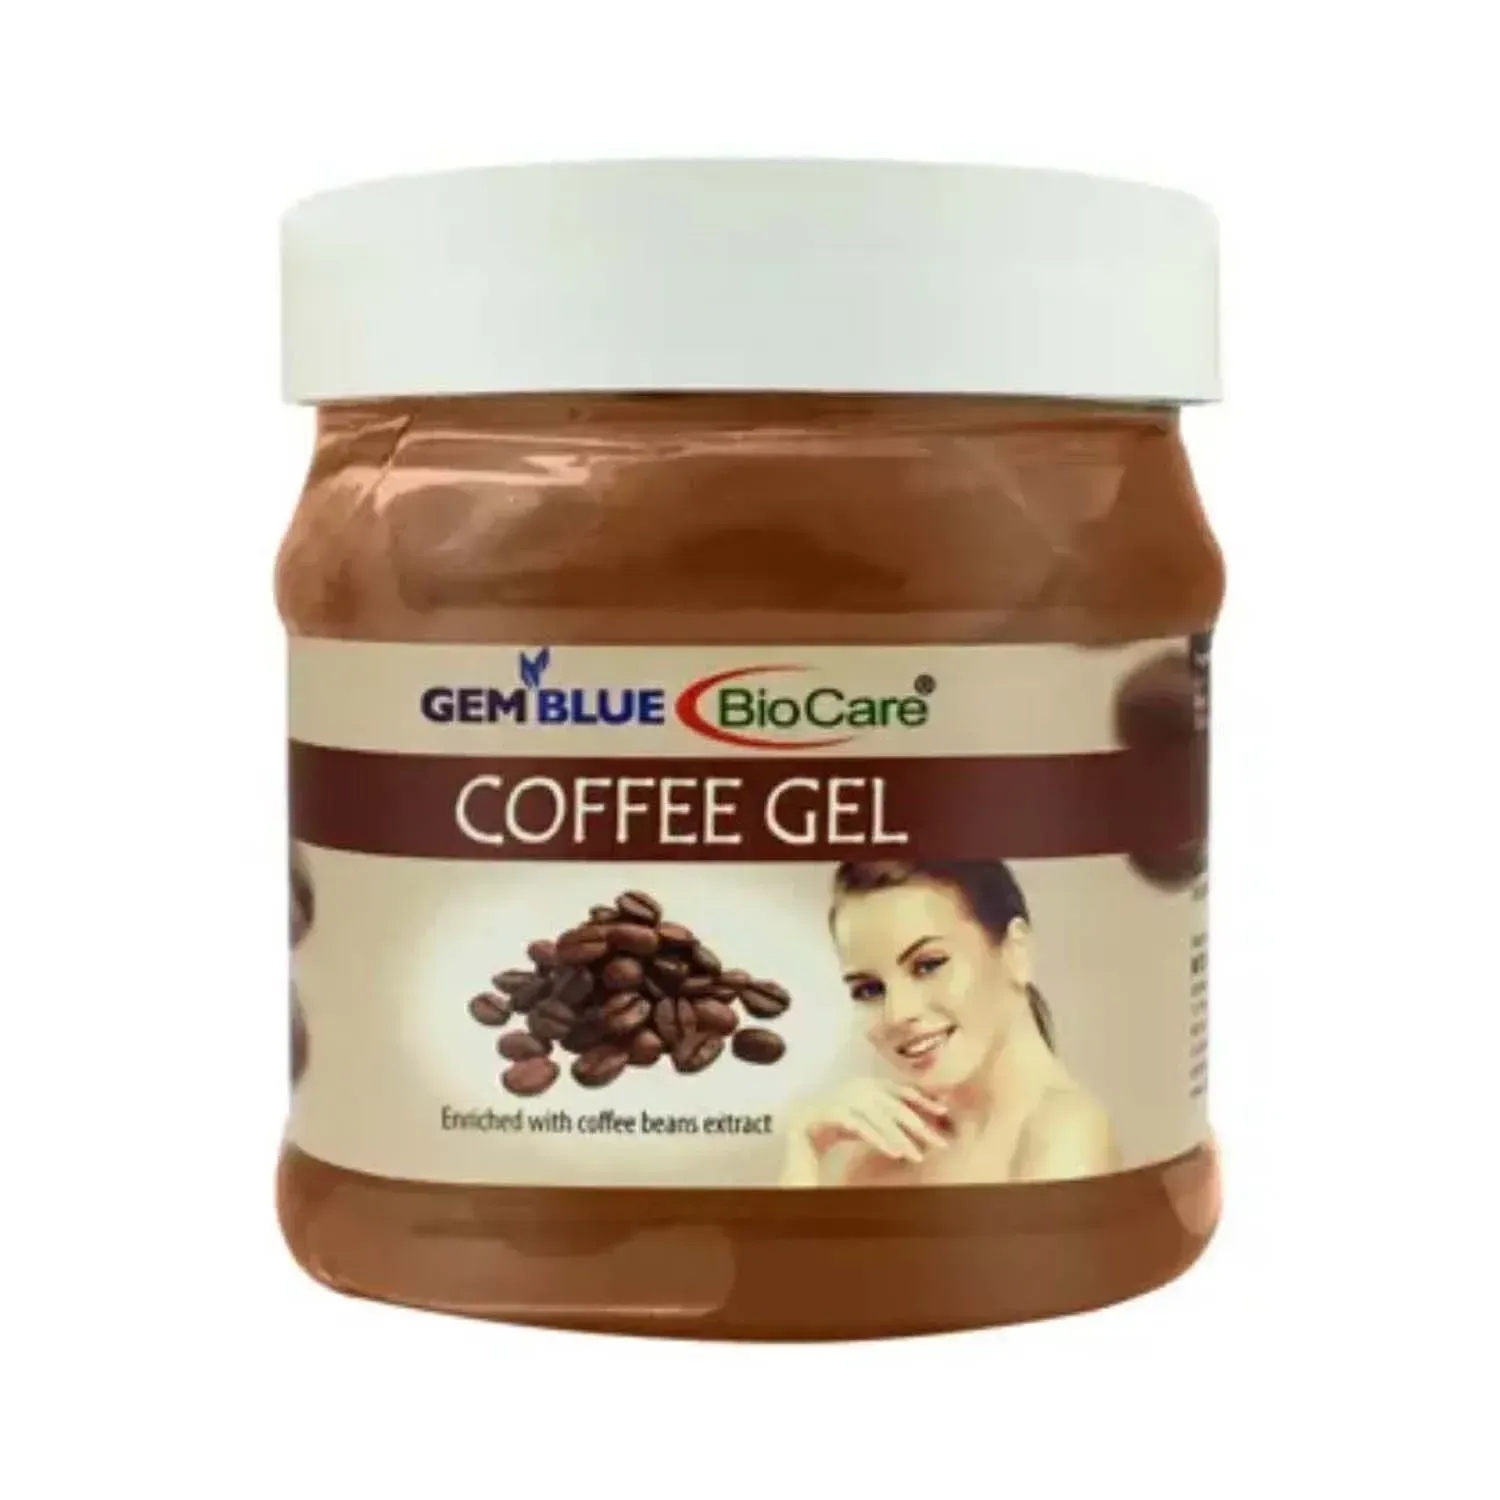 Gemblue Biocare | Gemblue Biocare Coffee Gel - (500ml)